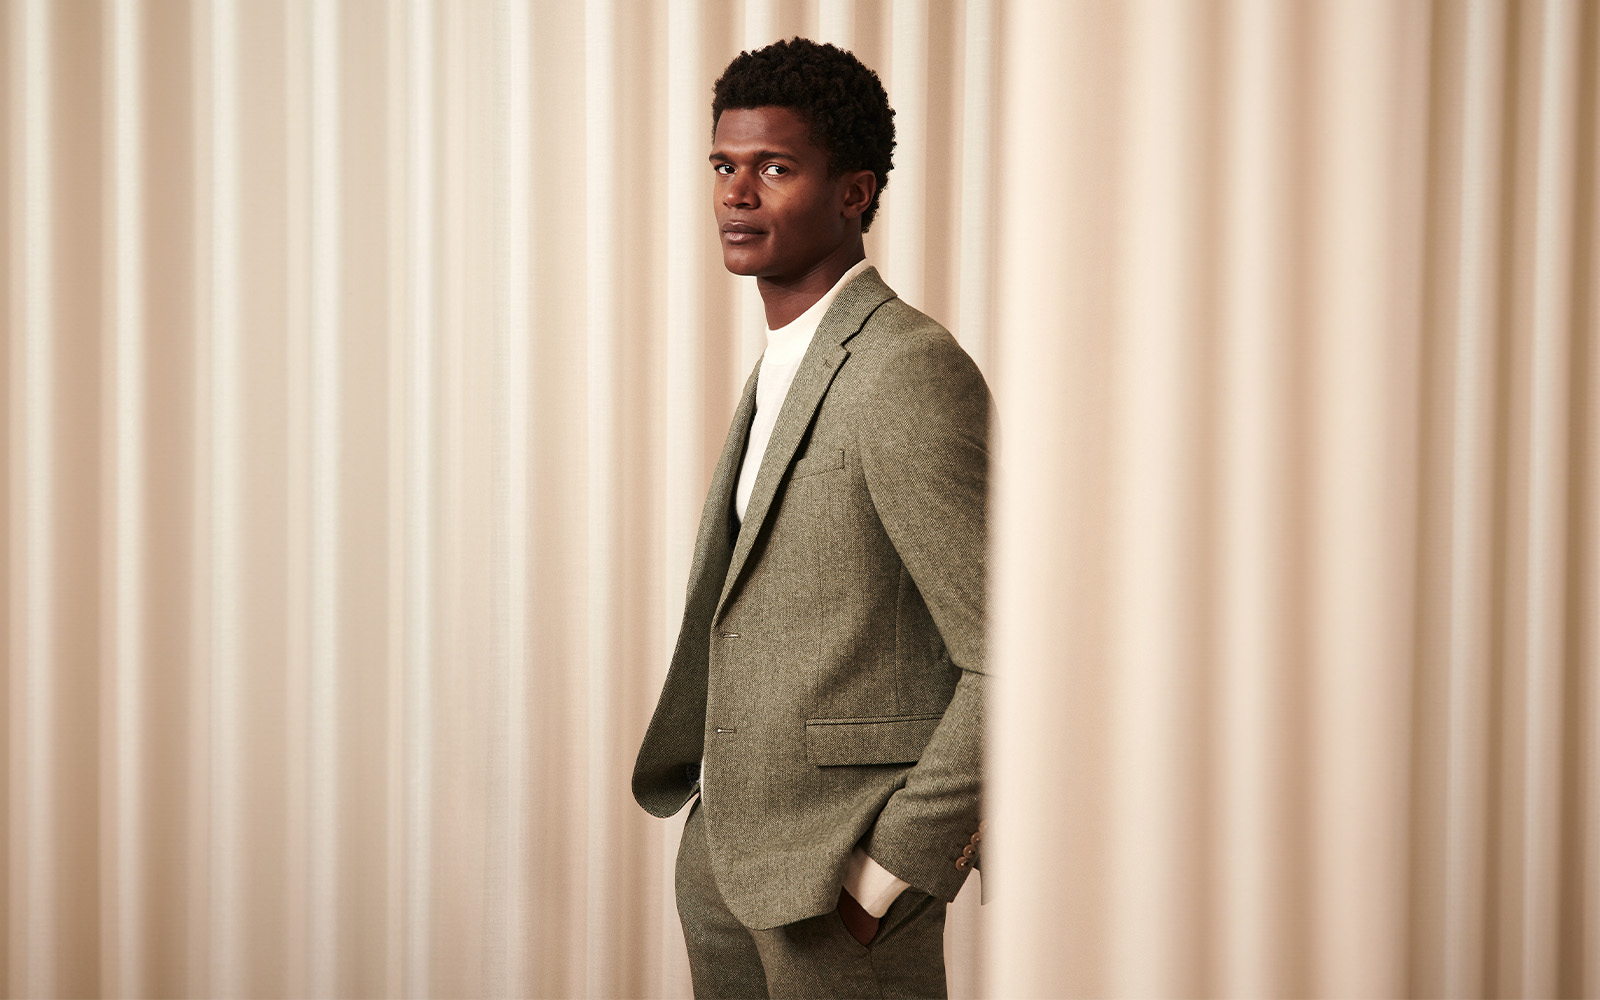 Buy MEN SUIT Men Clothing Men Wedding Suit Brown Suit for Groom Man 2piece Suit  Wedding Clothing Groom Brown Suit Suit for Men Online in India - Etsy